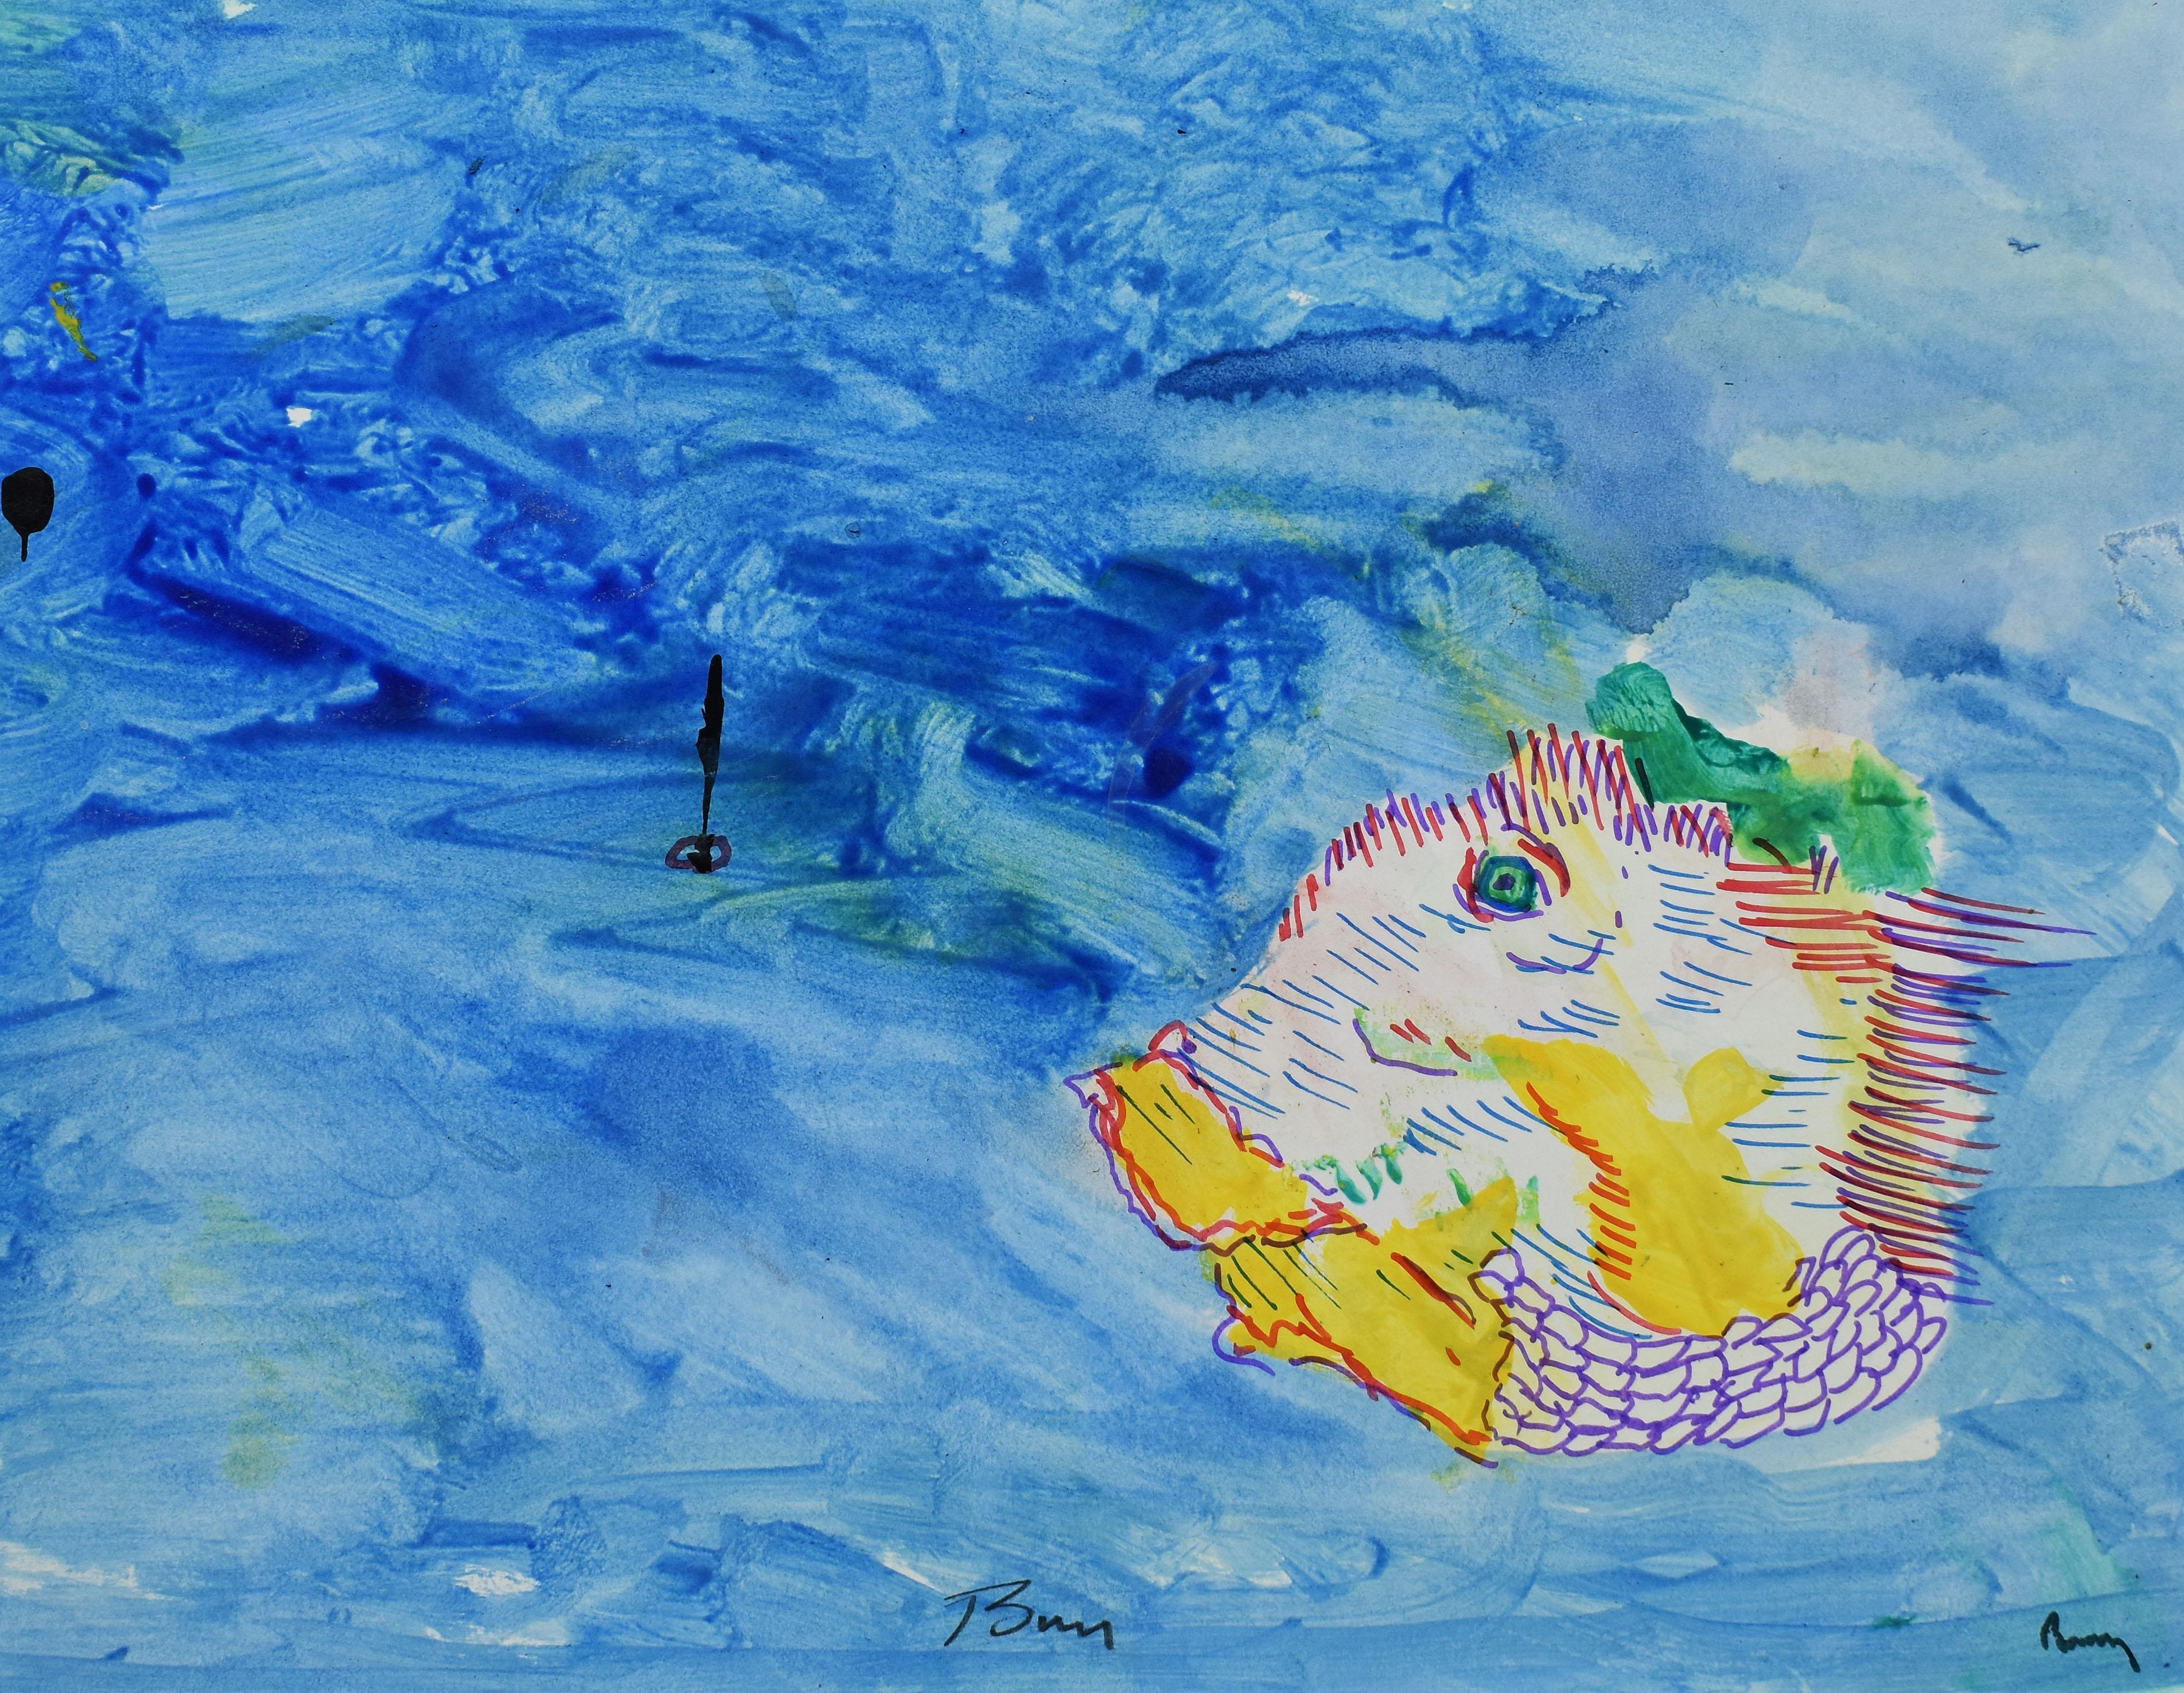  Abstraktes Meeresfisch-Gemälde der American School, New York City, Abstrakter Magic Surrealismus (Abstrakter Expressionismus), Painting, von Barry Johnson